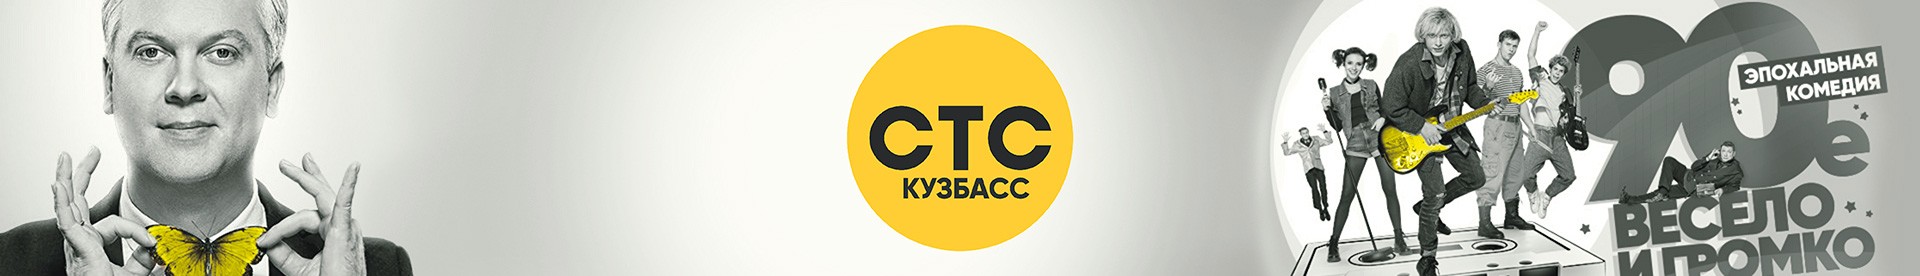 Реклама телеканал СТС Кузбасс